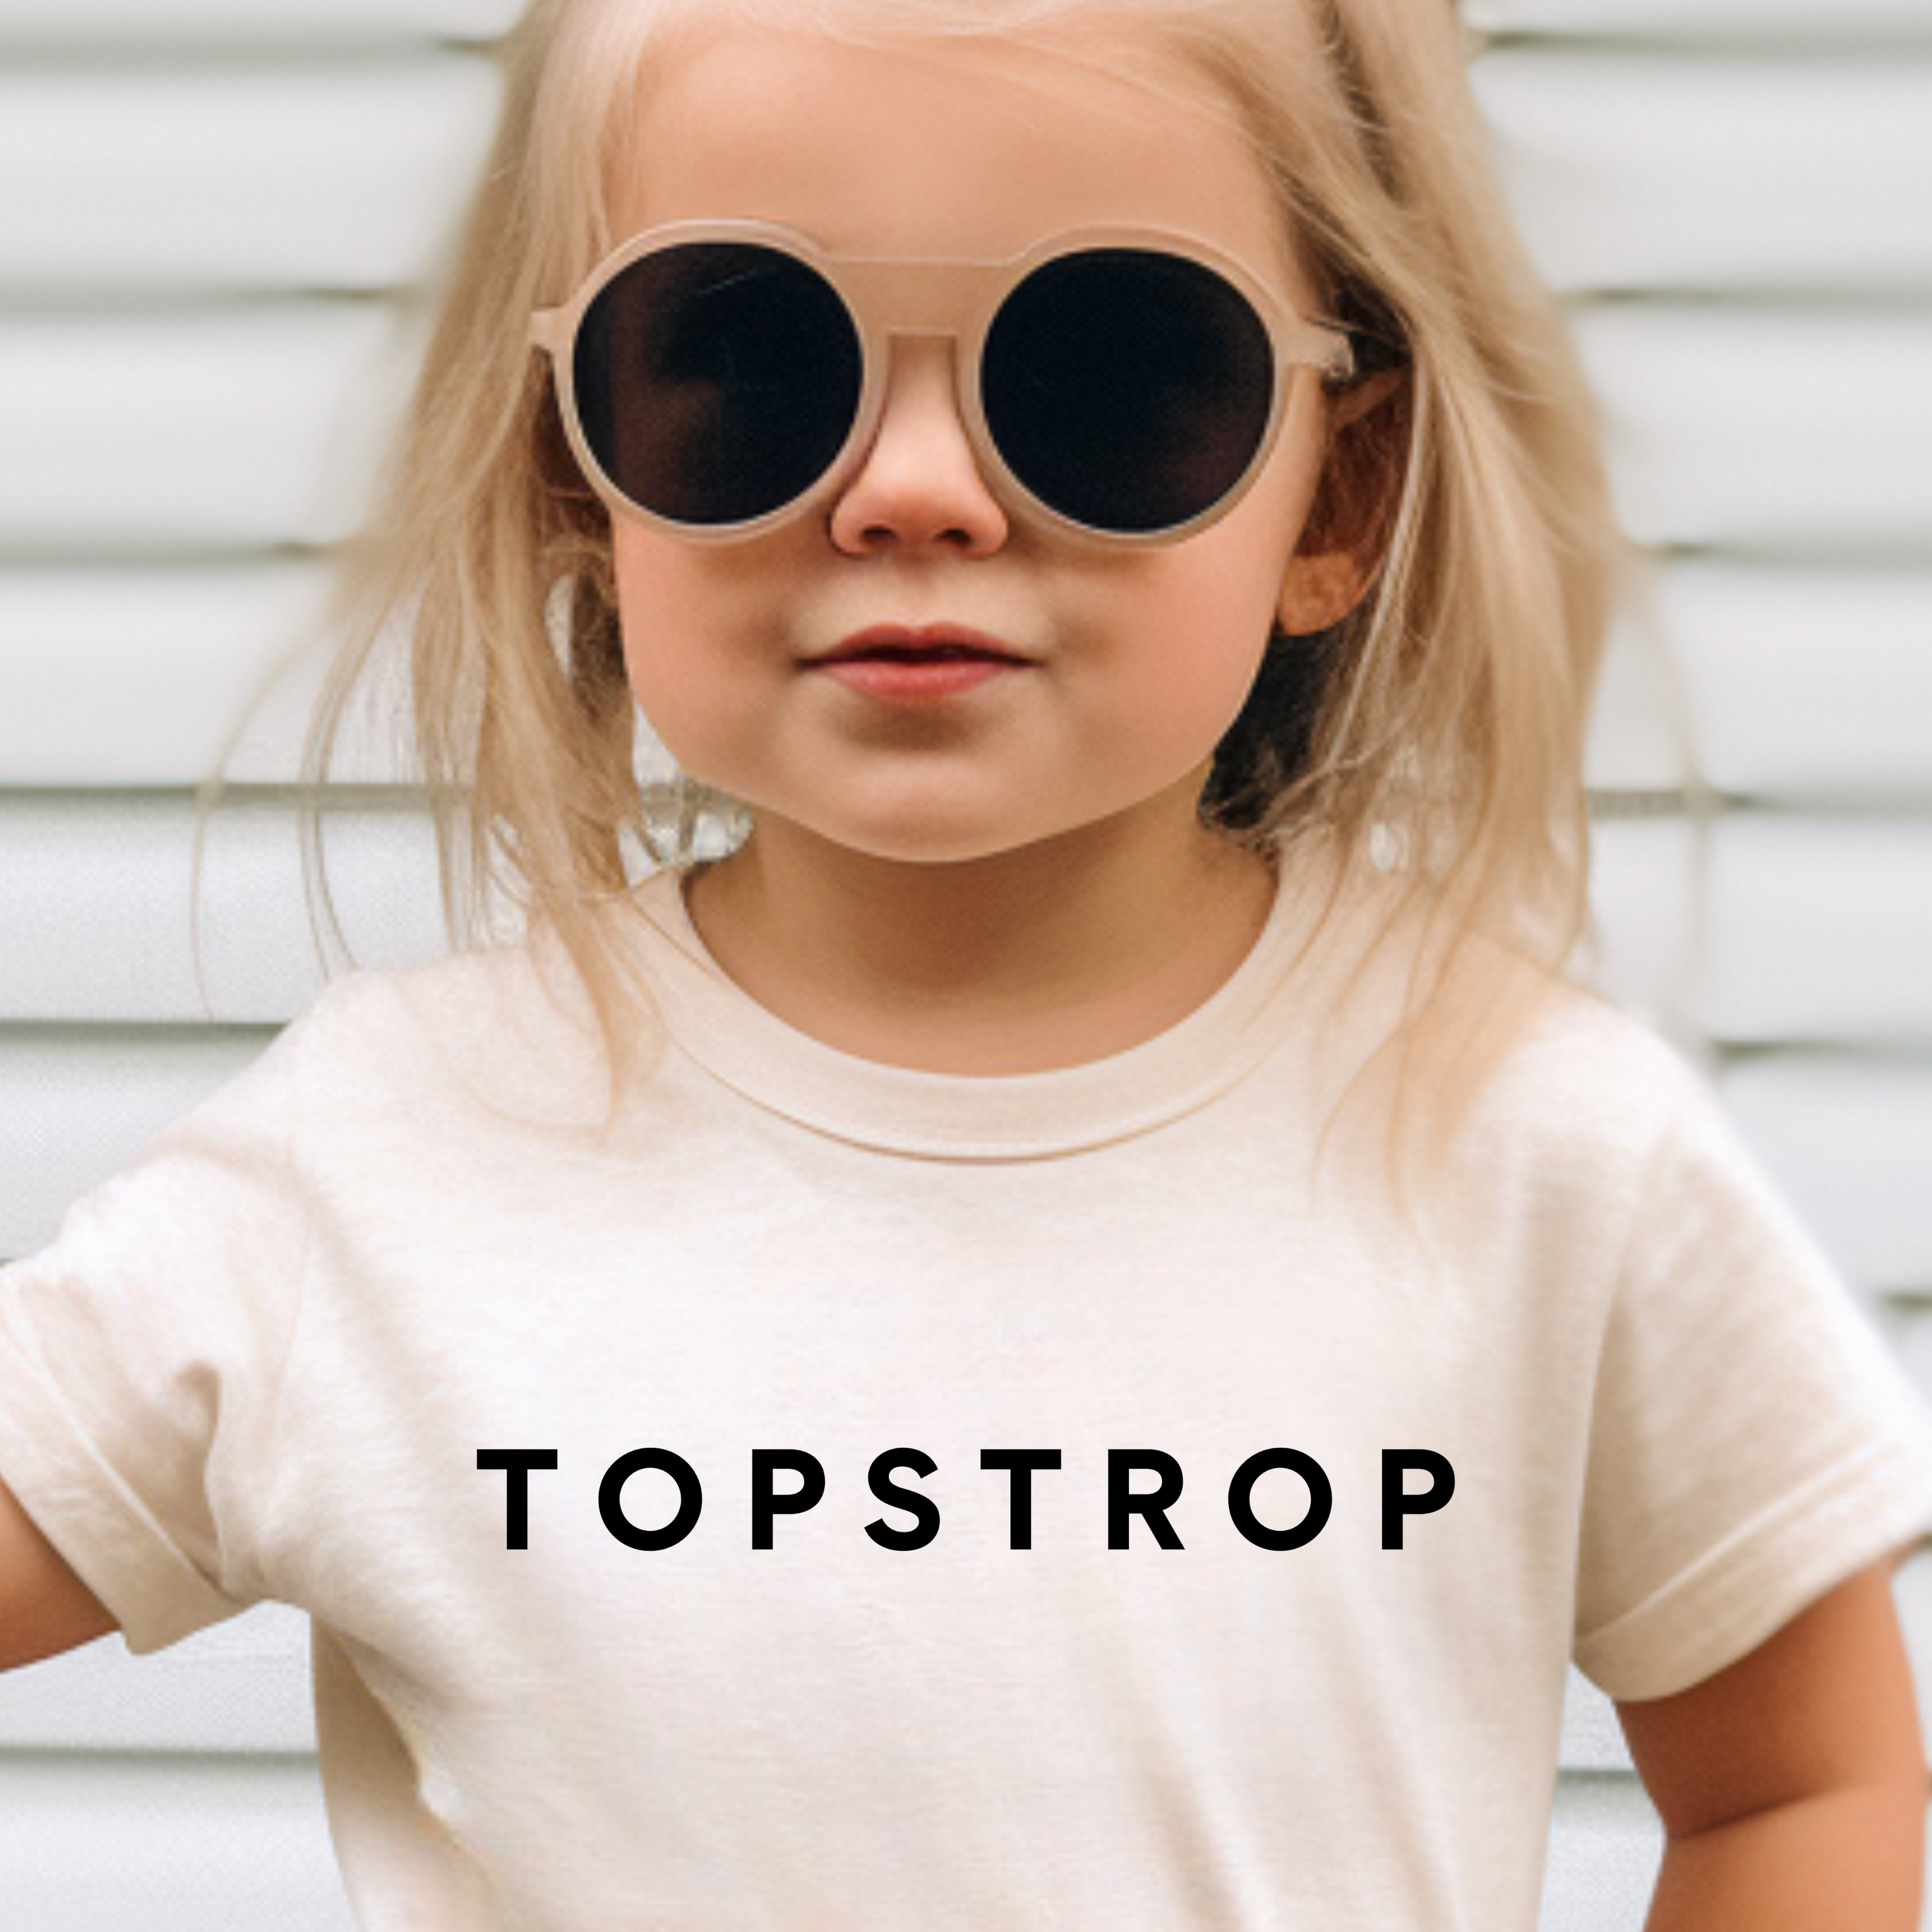 Topstrop Kids T Shirt